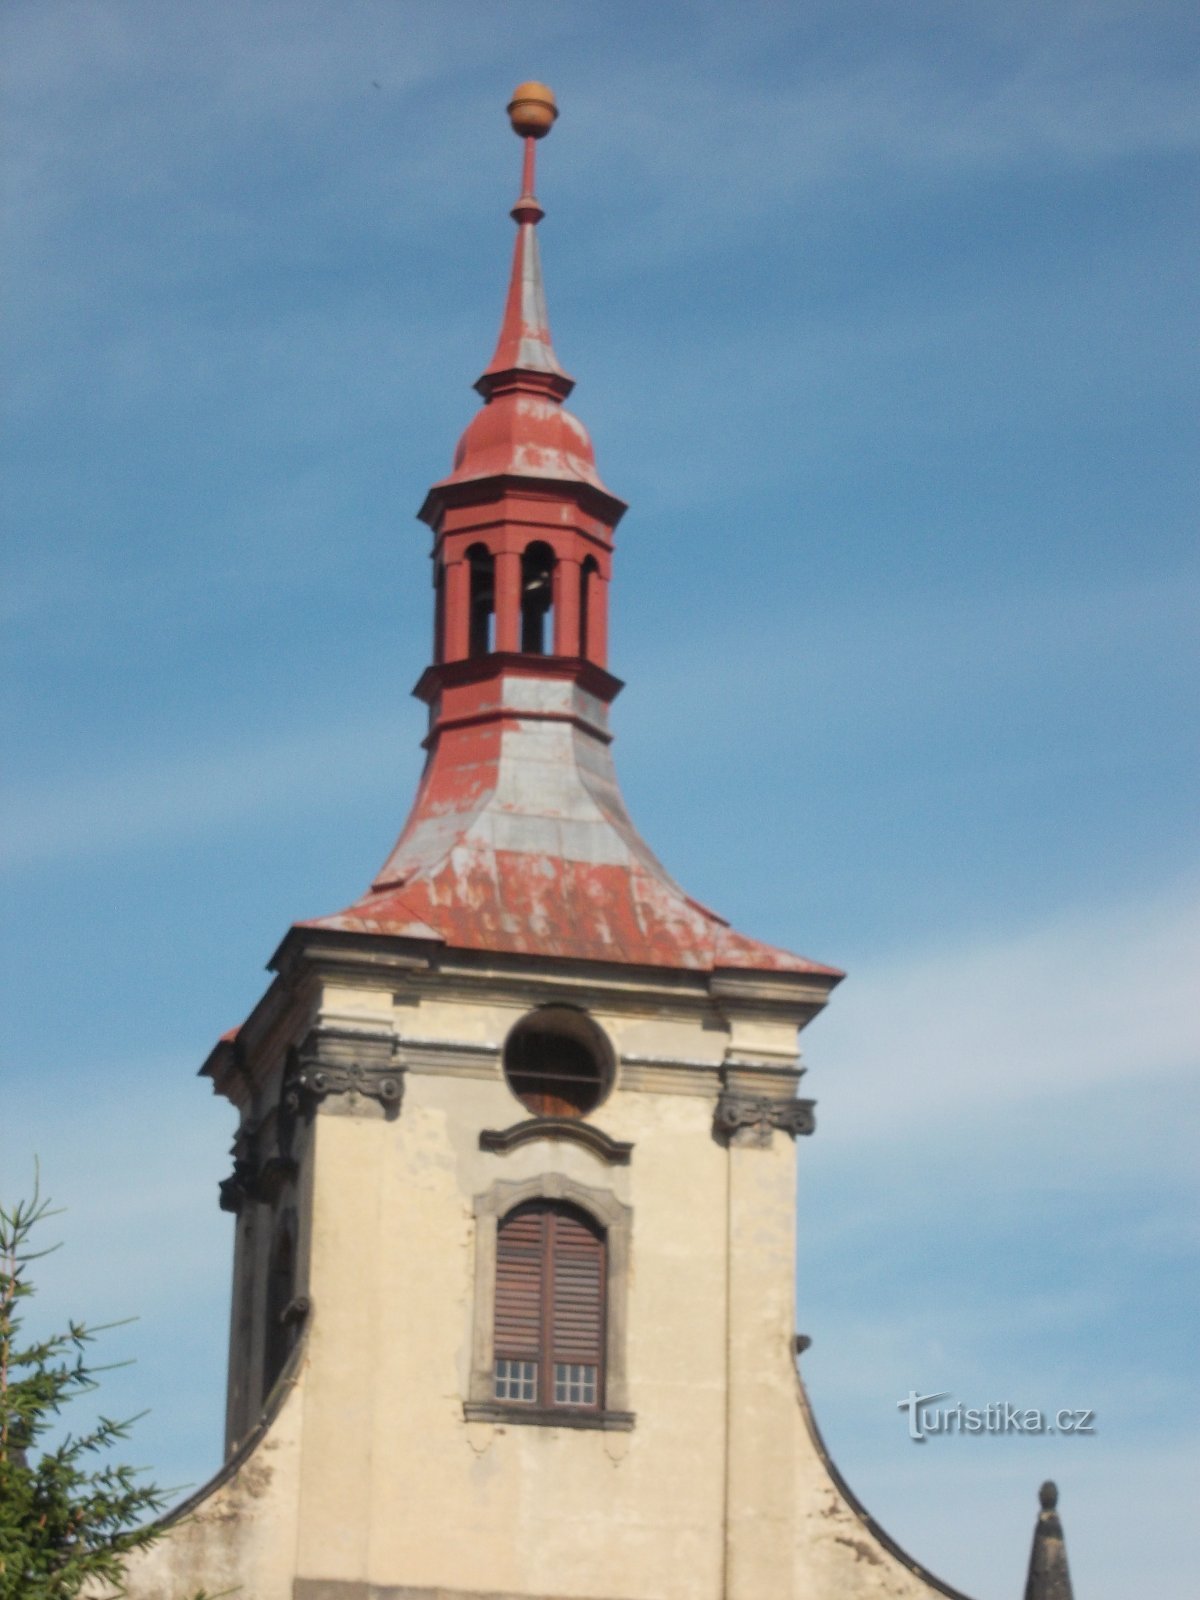 教会の塔の時計の開口部